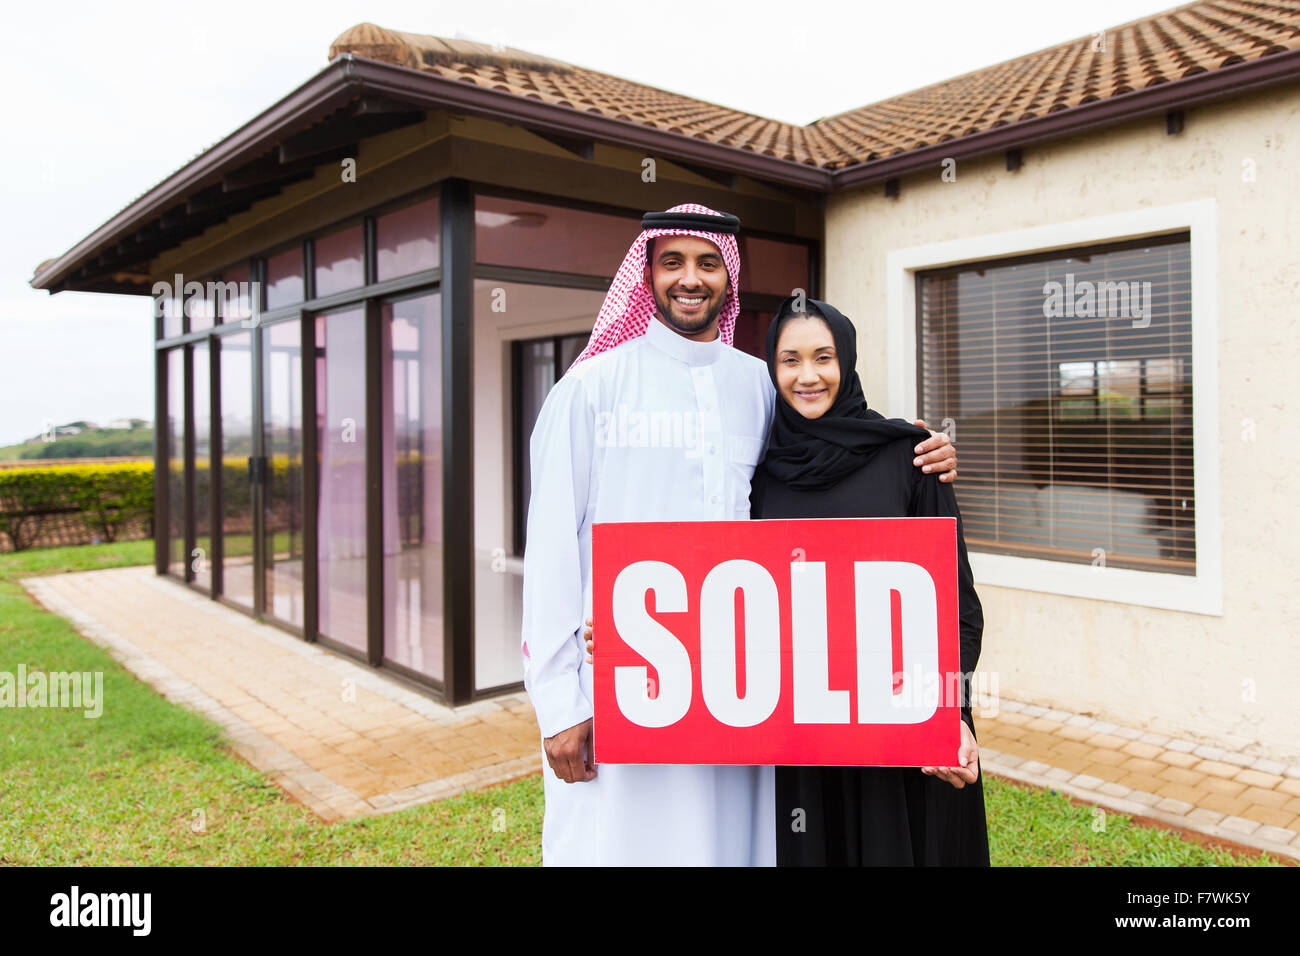 Arabische Brautpaar vor neuen Domizil mit verkauften Immobilien Schild Stockfoto